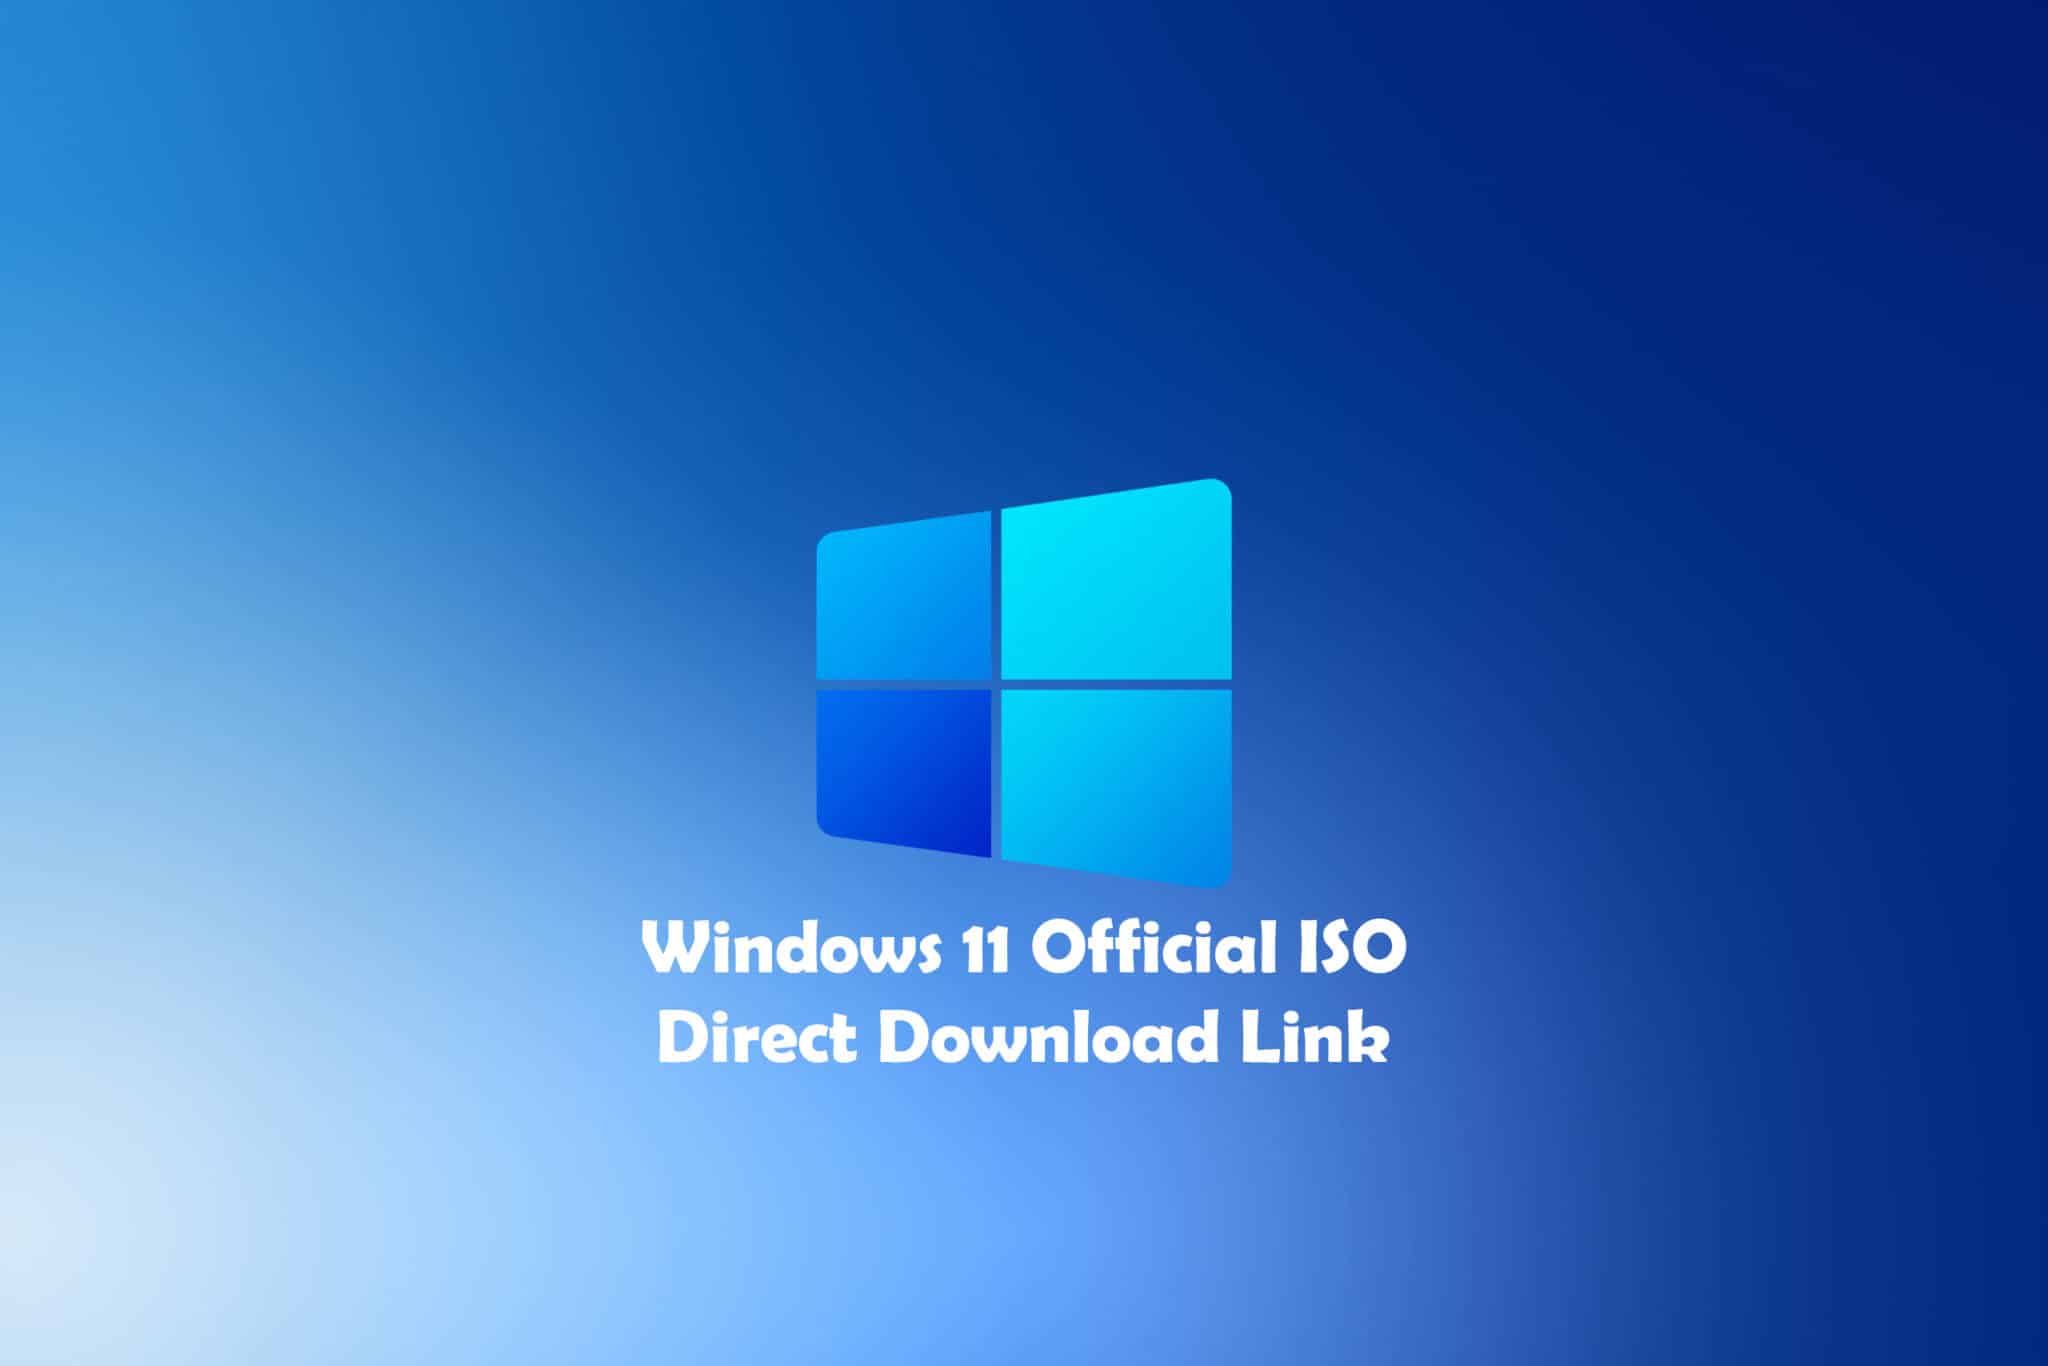 windows 11 iso download 64 bit